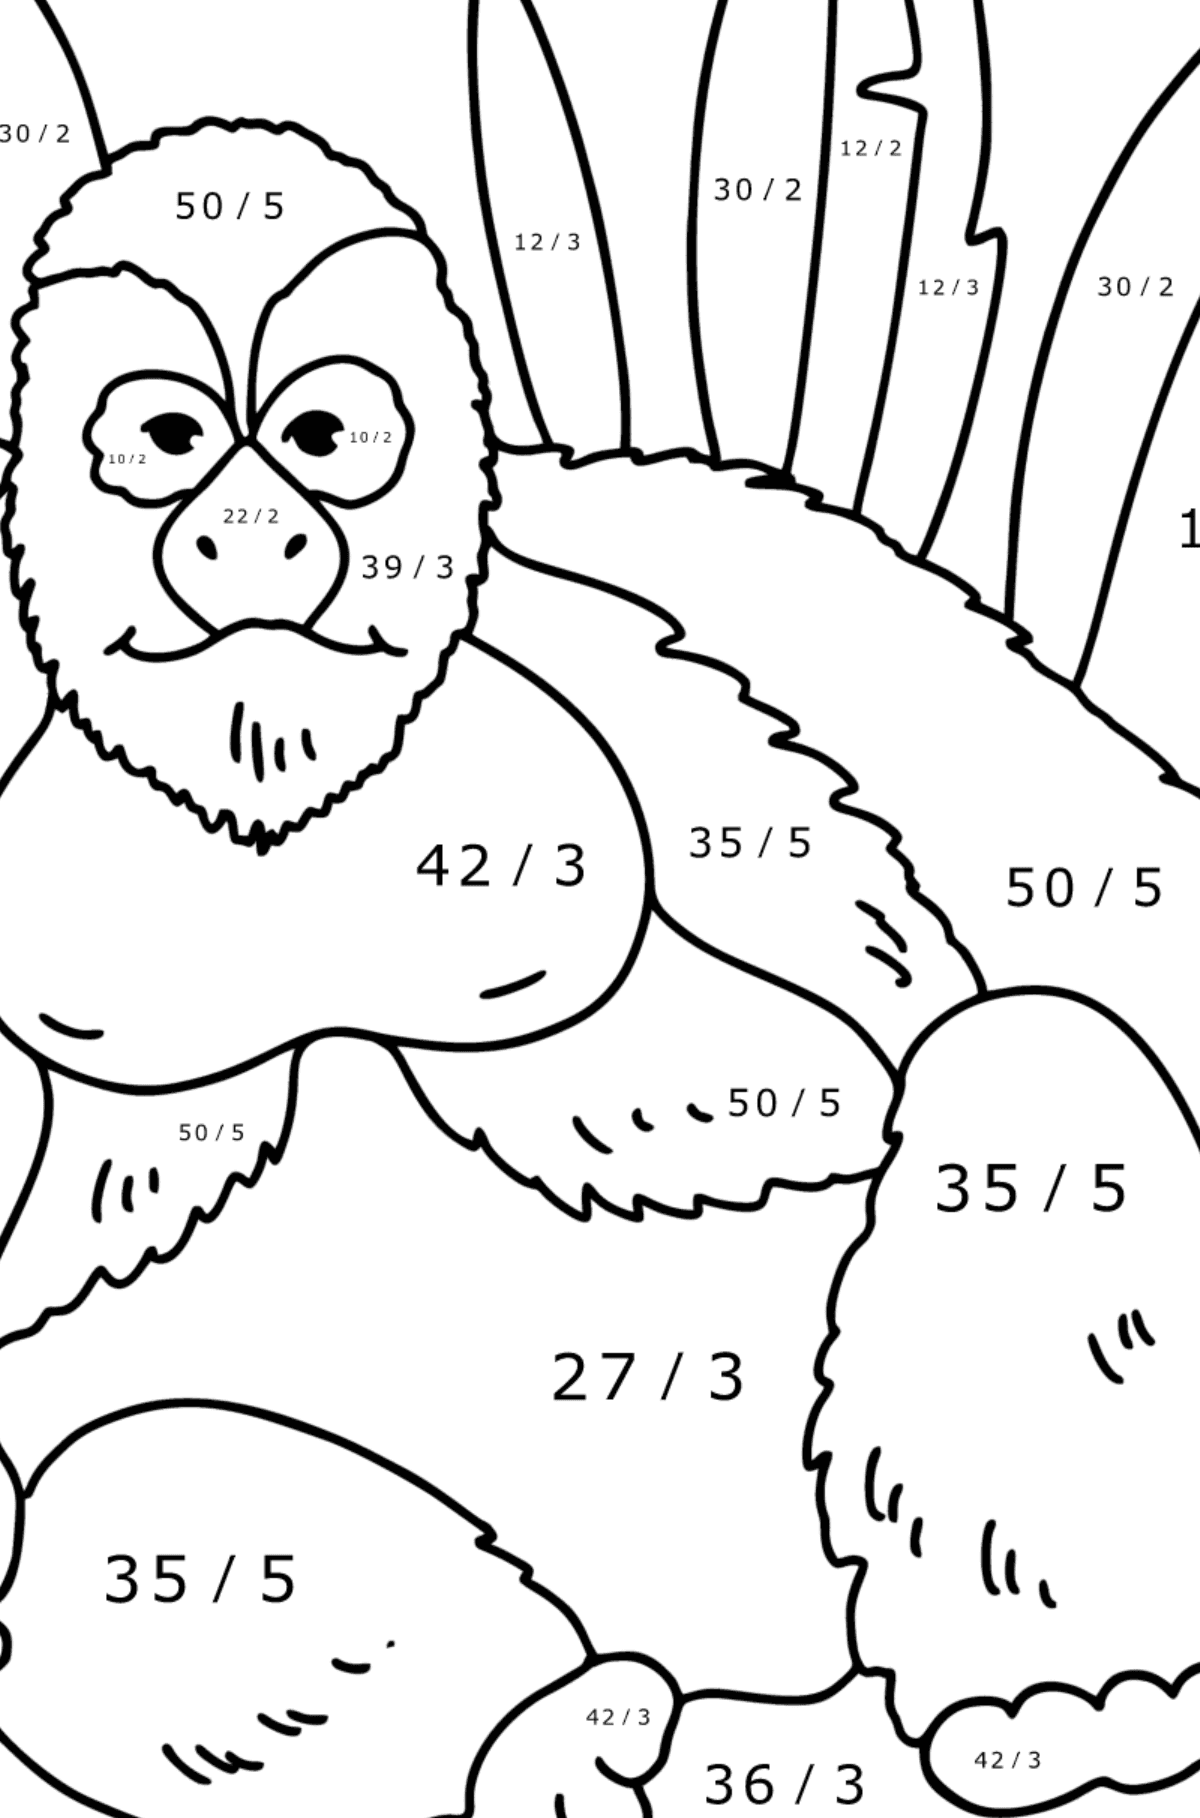 Gorilla kleurplaat - Wiskunde kleurplaten - delen voor kinderen